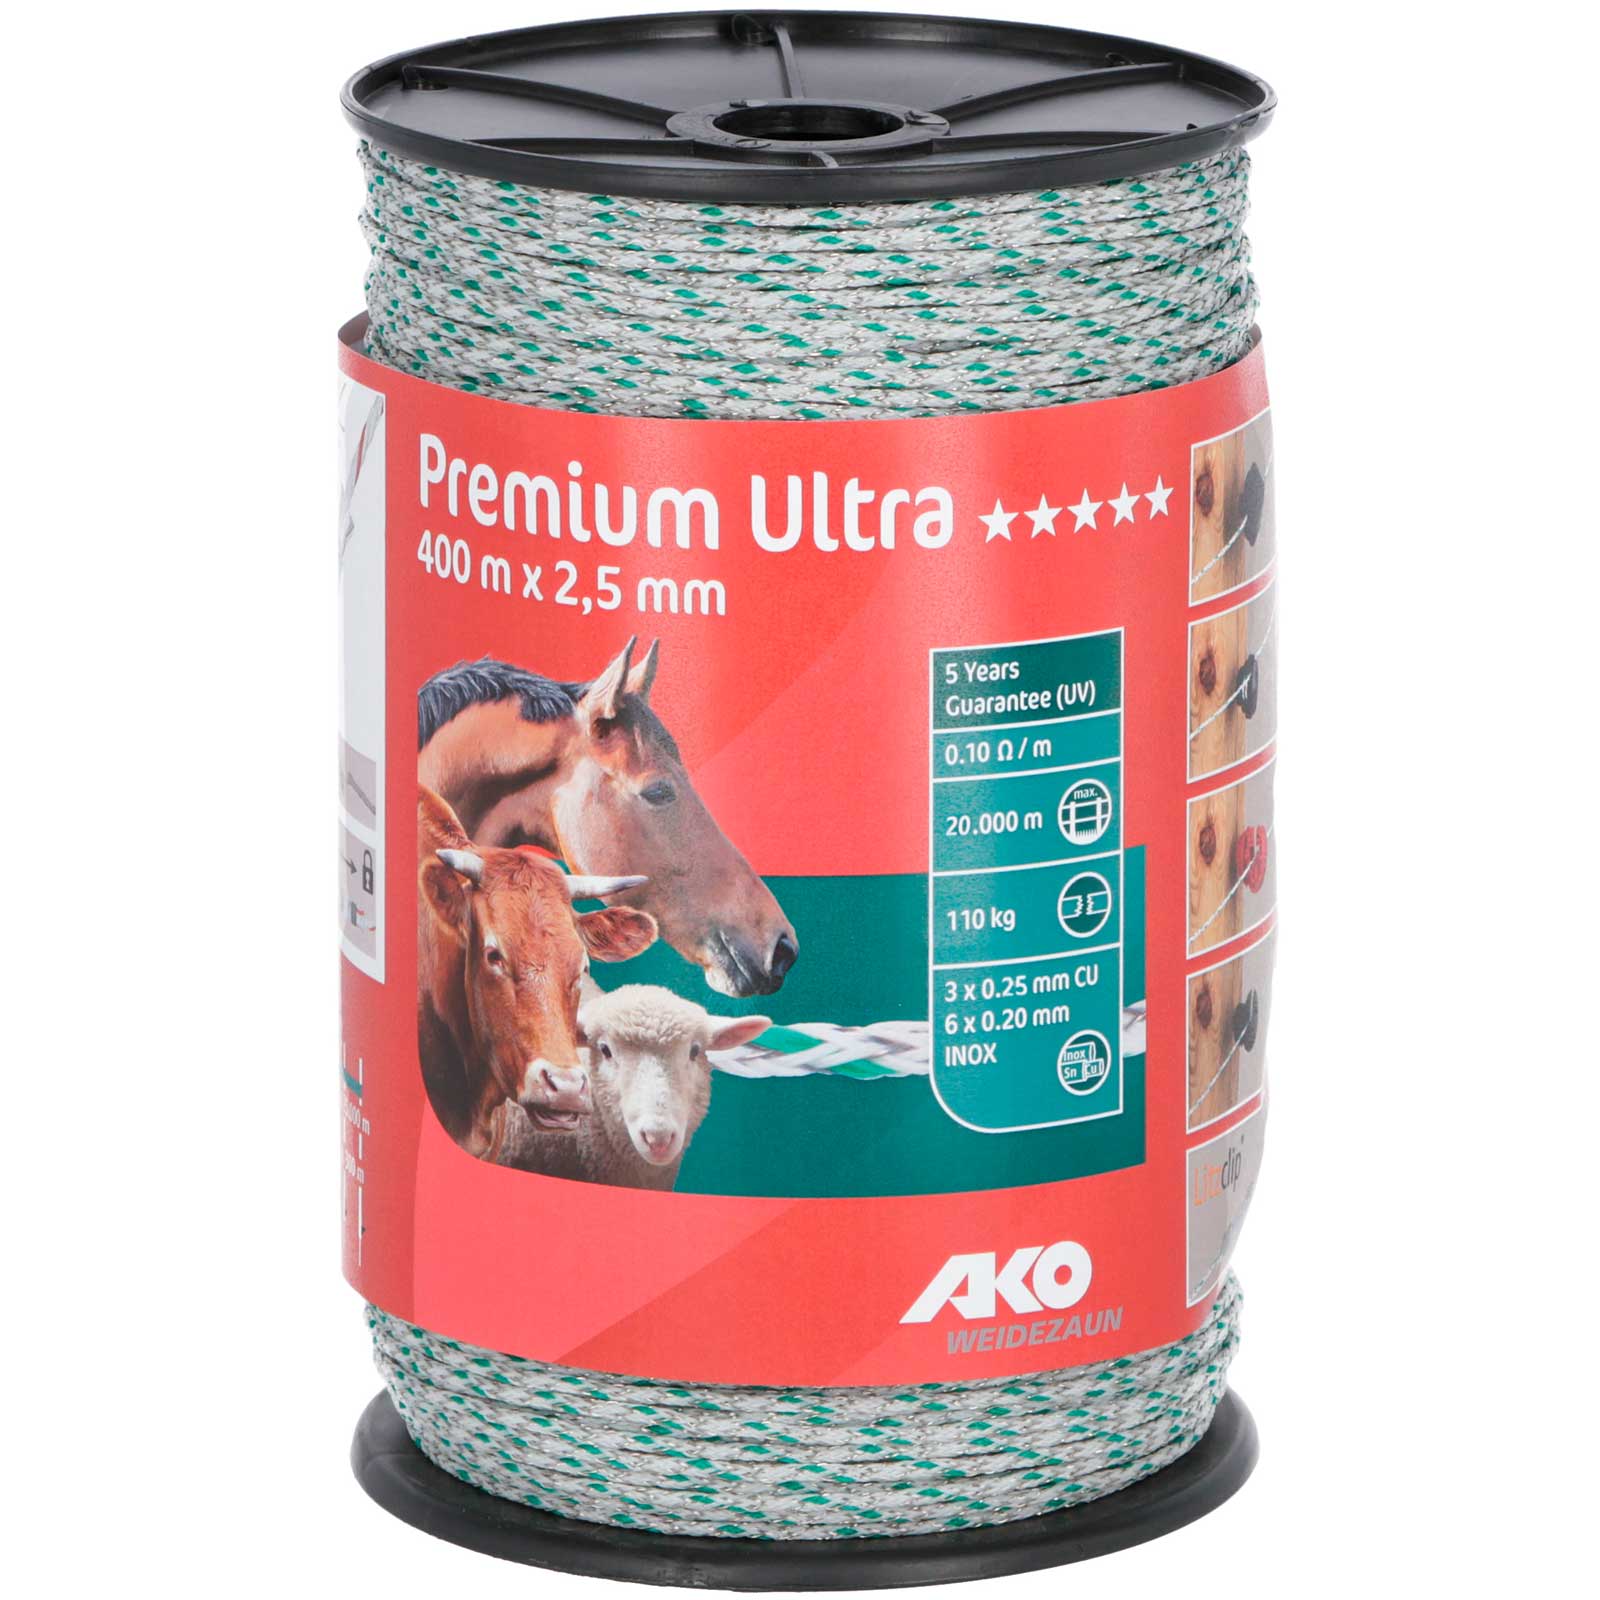 Fil de clôture électrique AKO Premium Ultra 400m, 6x0.20 acier + 3x0.25 cuivre, blanc / vert